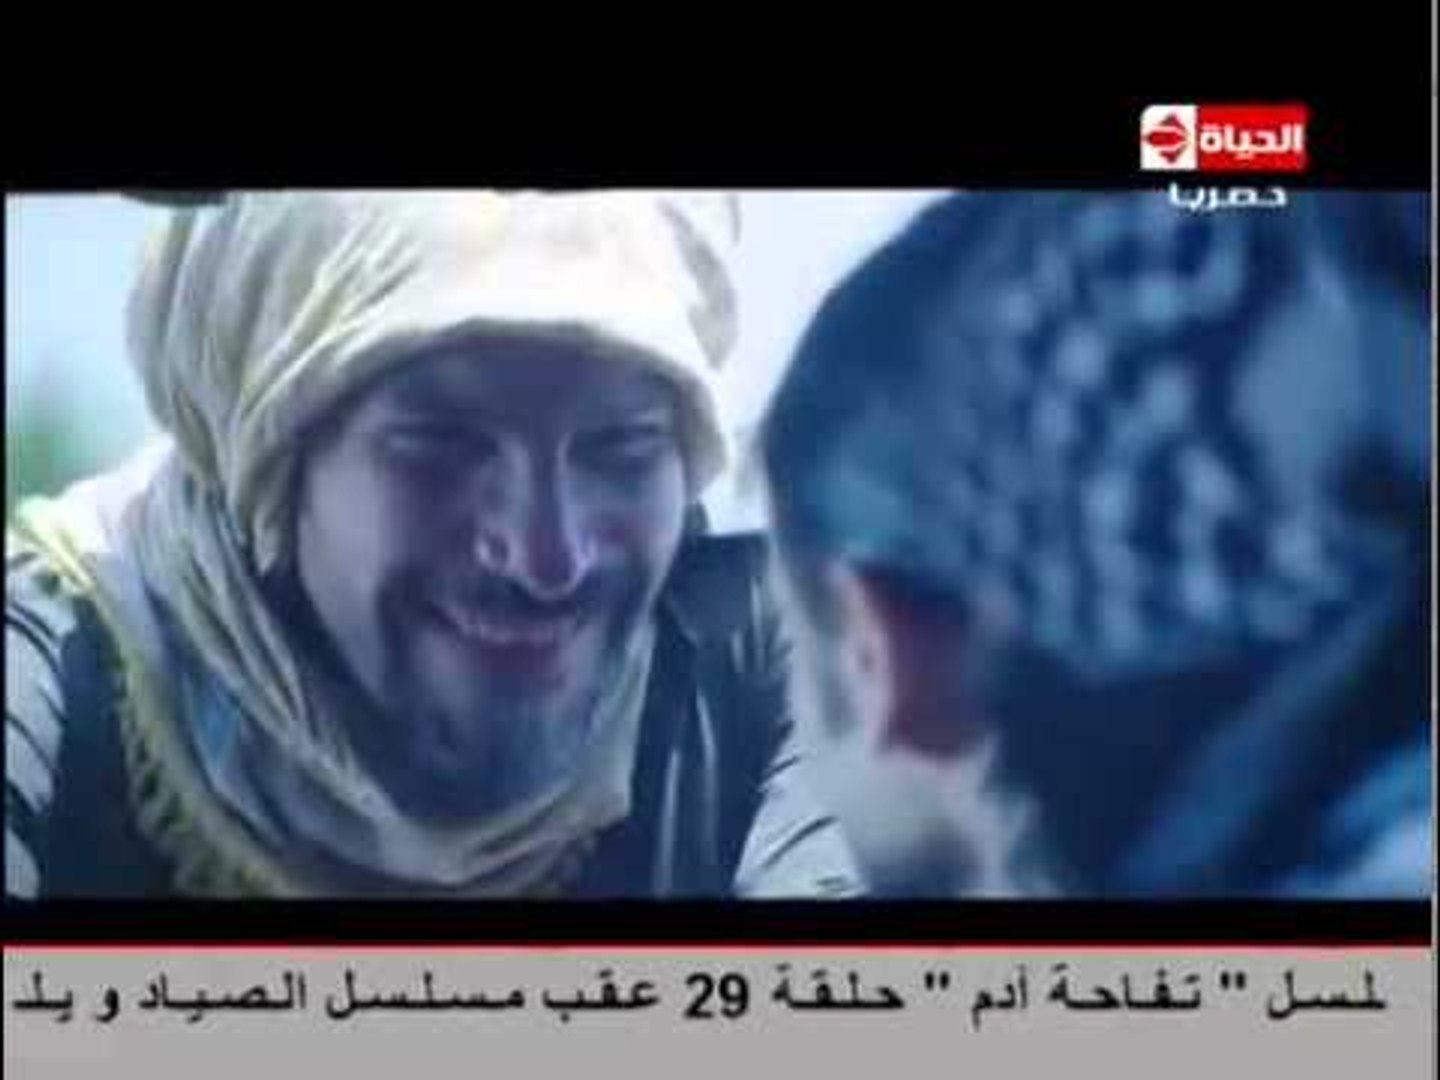 الصياد شاهد لحظة قتل "ناجي الخليلي" .. الحلقة 29 - video Dailymotion